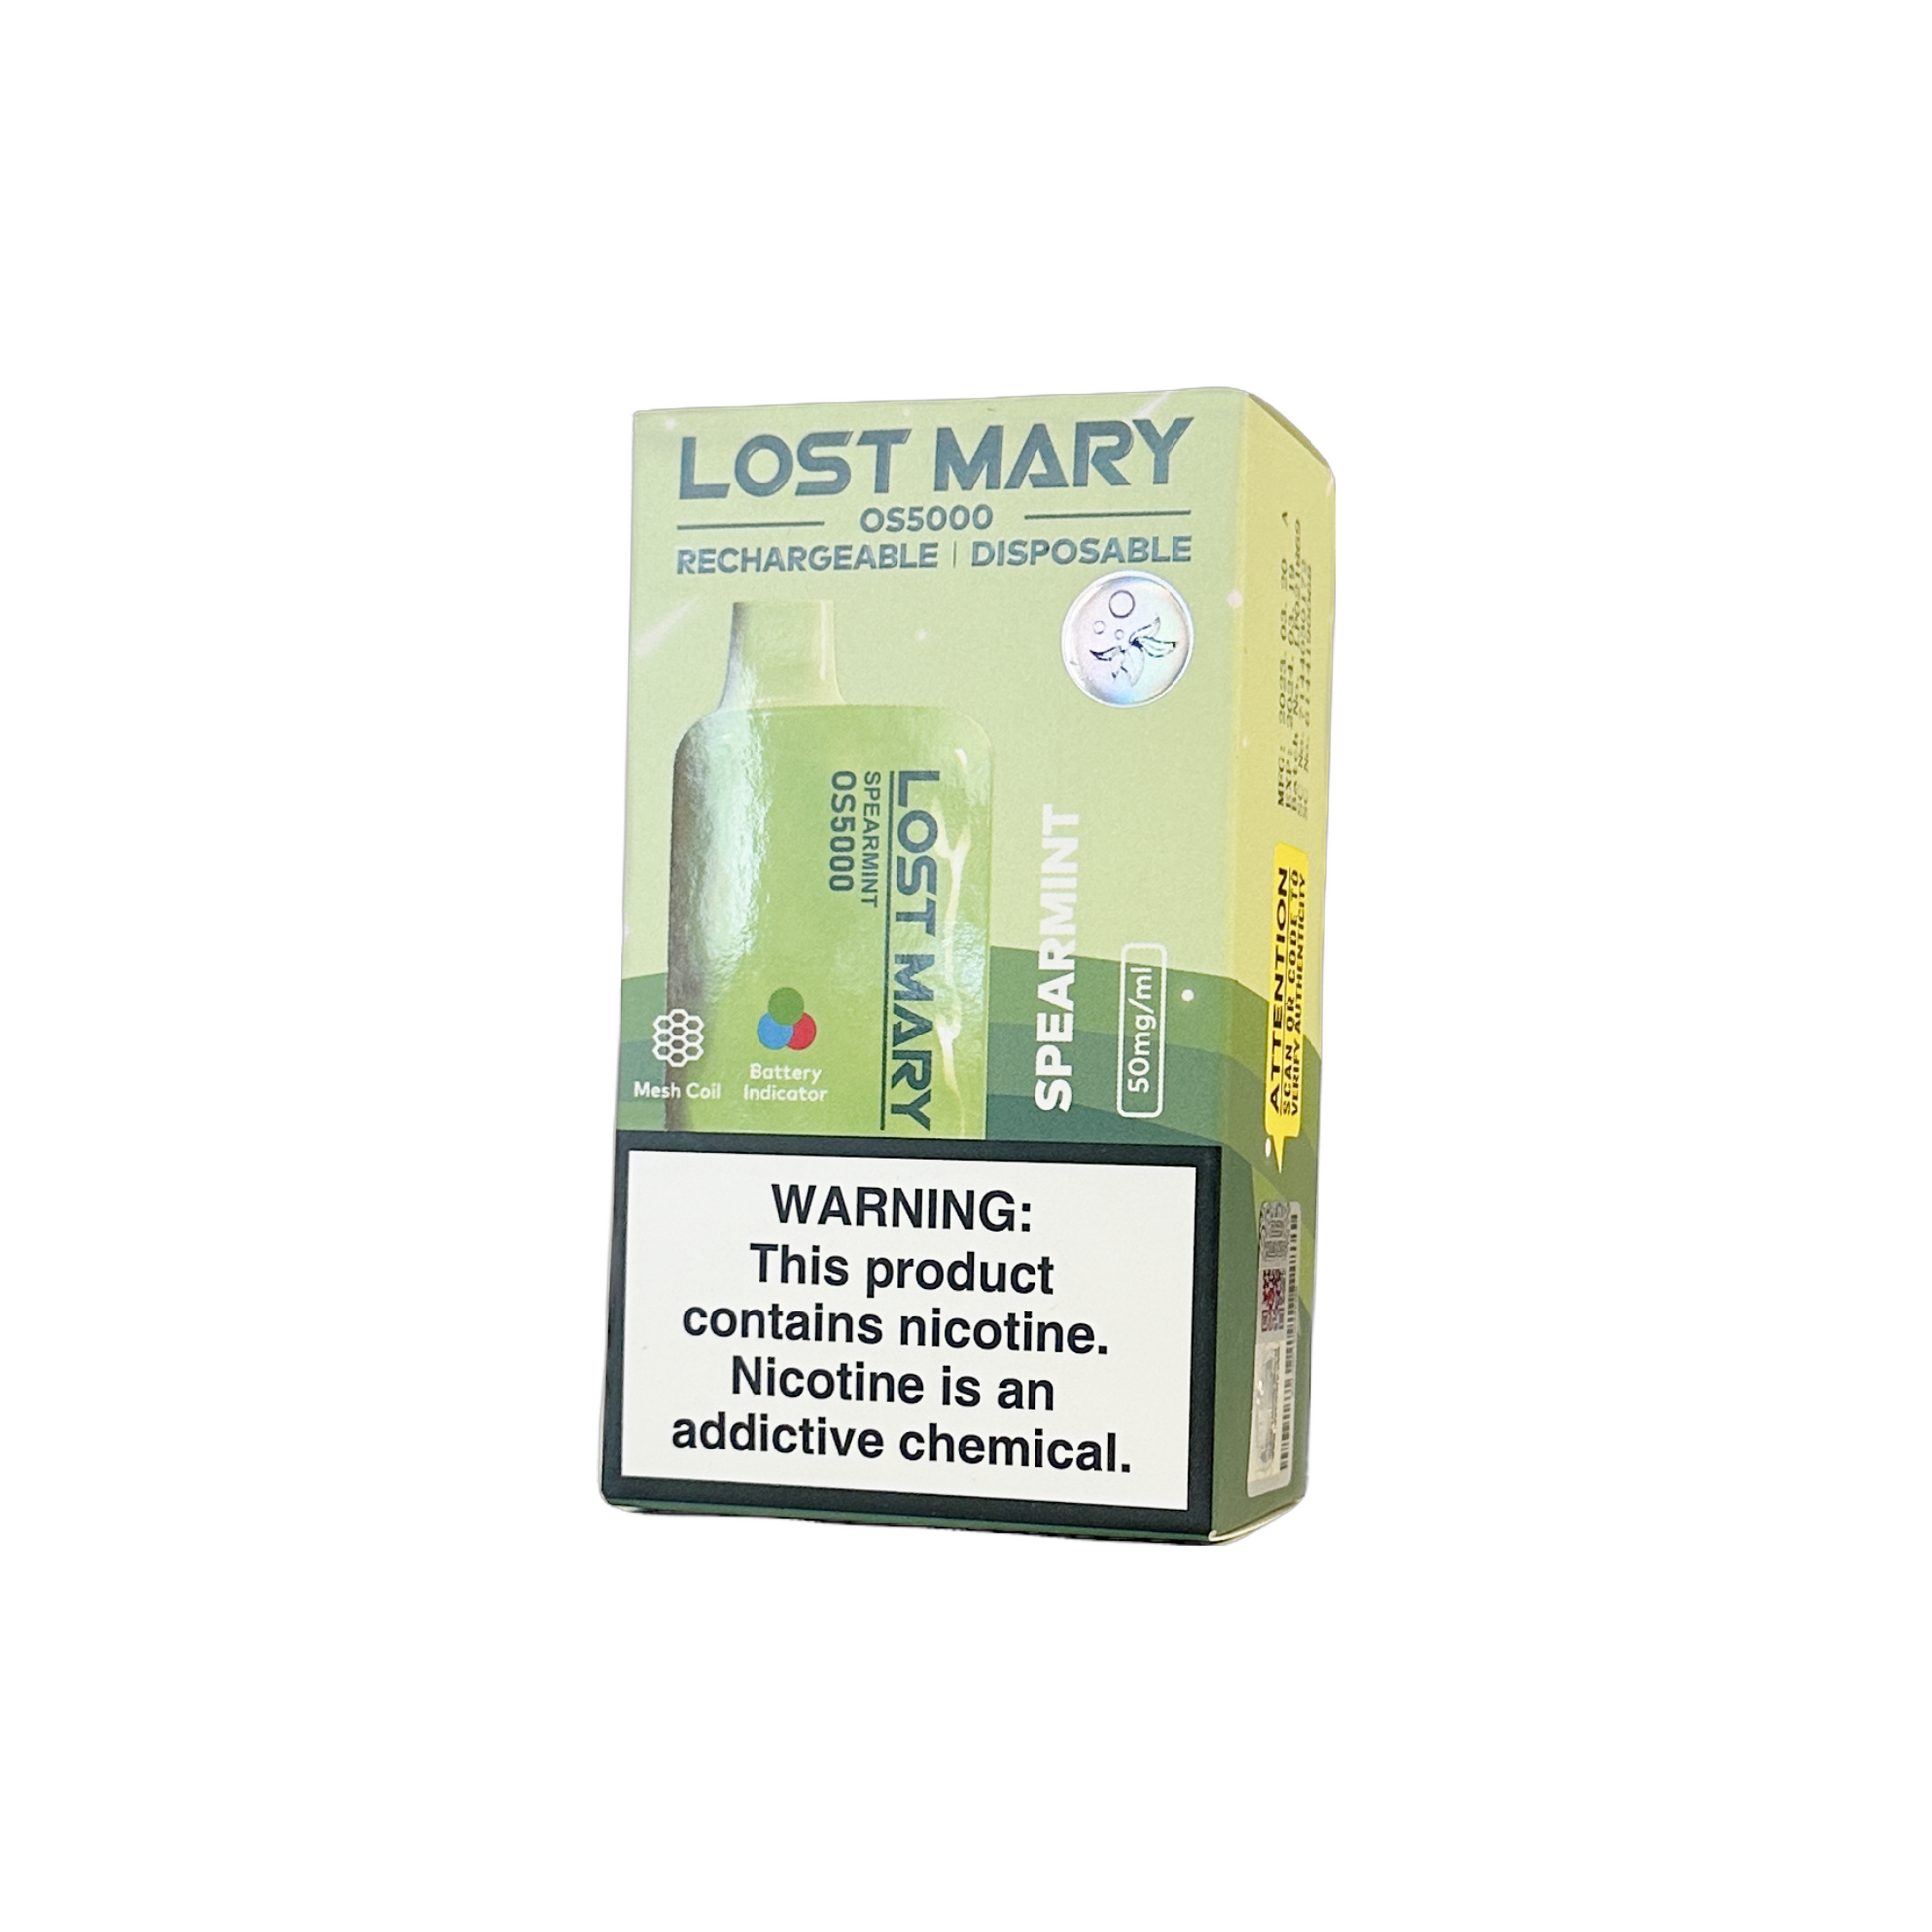 Lost Mary OS5000, Lost Mary OS5000 Vapes, Lost Mary OS5000 Disposable Vapes, Lost Mary OS5000 5000 Puffs, Lost Mary OS5000 Disposable Vape 5000 Puffs, Buy Lost Mary OS5000 Vape, Spearmint Lost Mary OS5000 Vape, Lost Mary OS5000 Spearmint Vape, Lost Mary OS5000 Vapeszn.